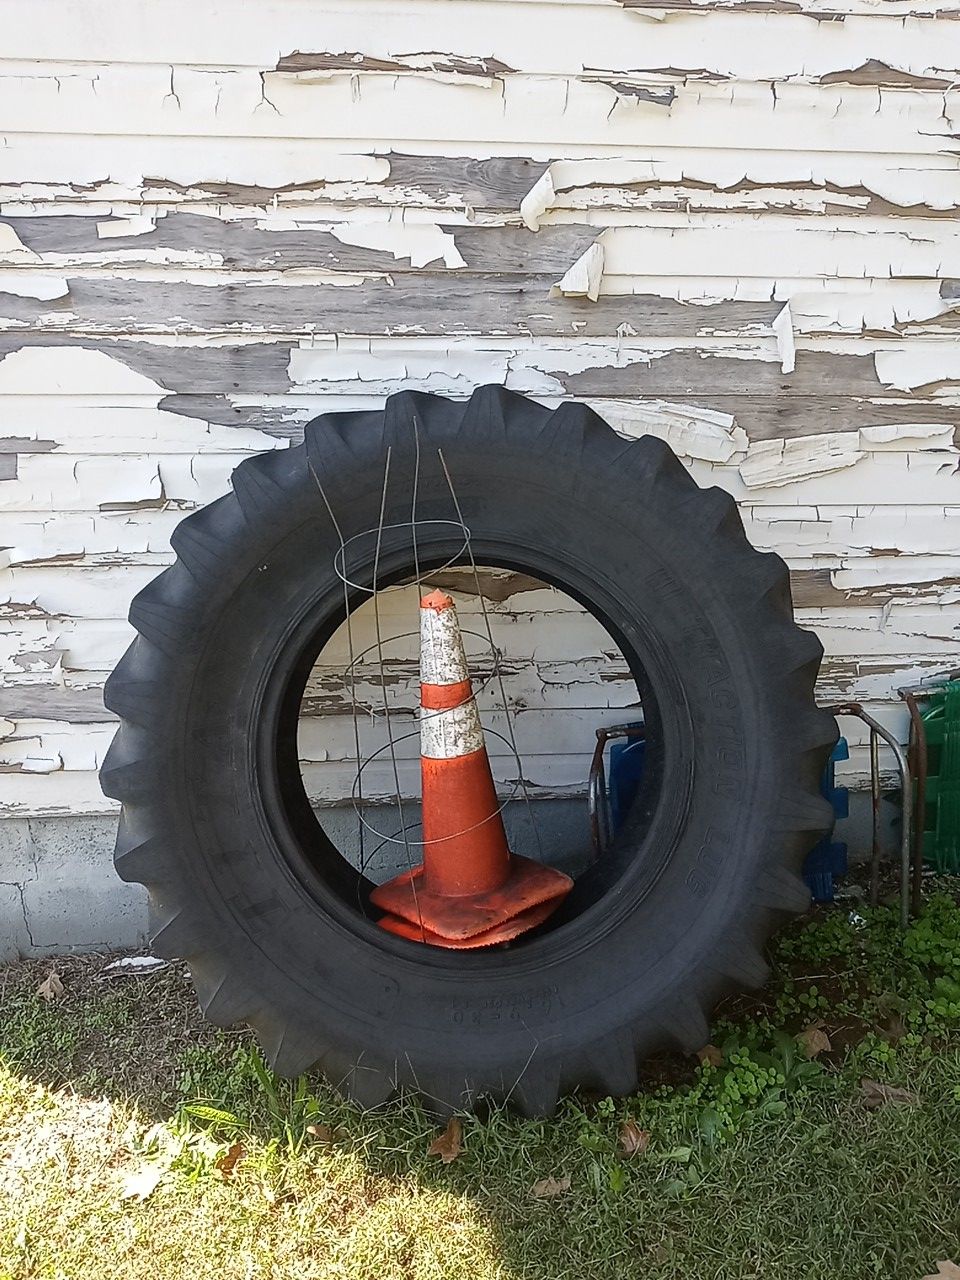 Giant tire